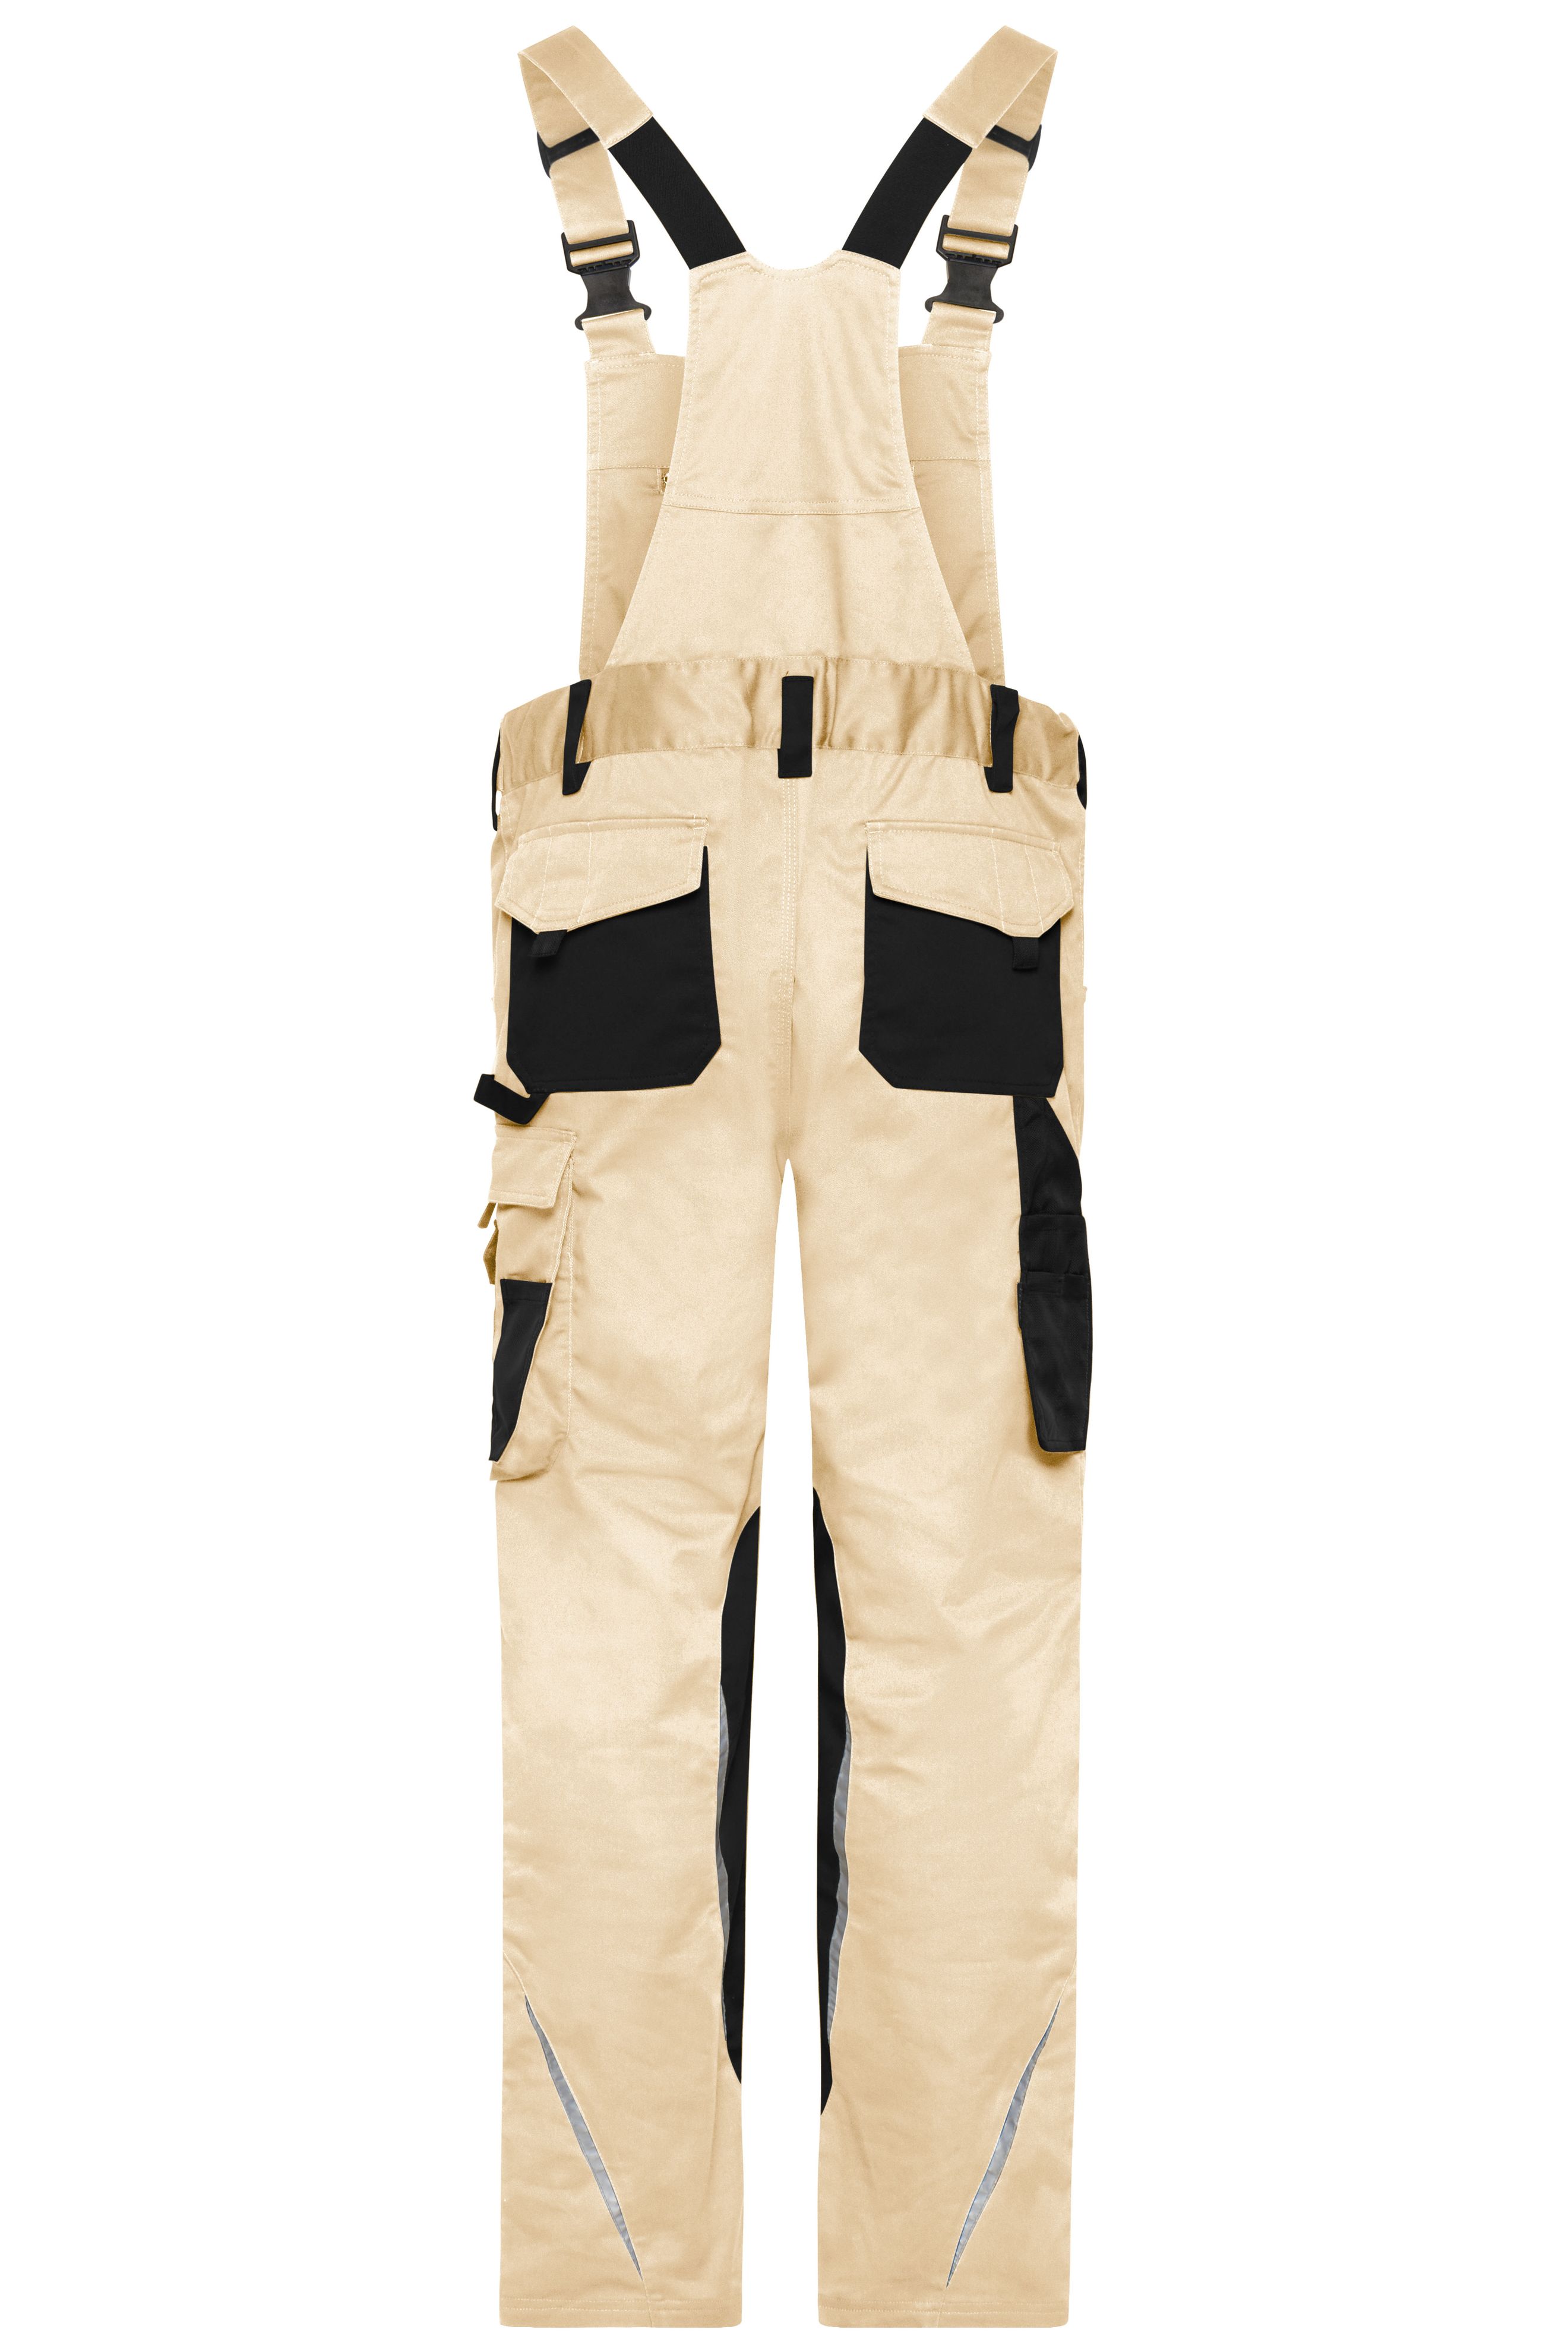 Workwear Pants with Bib - STRONG - JN1833 Spezialisierte Latzhose mit funktionellen Details und flexibel einstellbarem, elastischen Bund